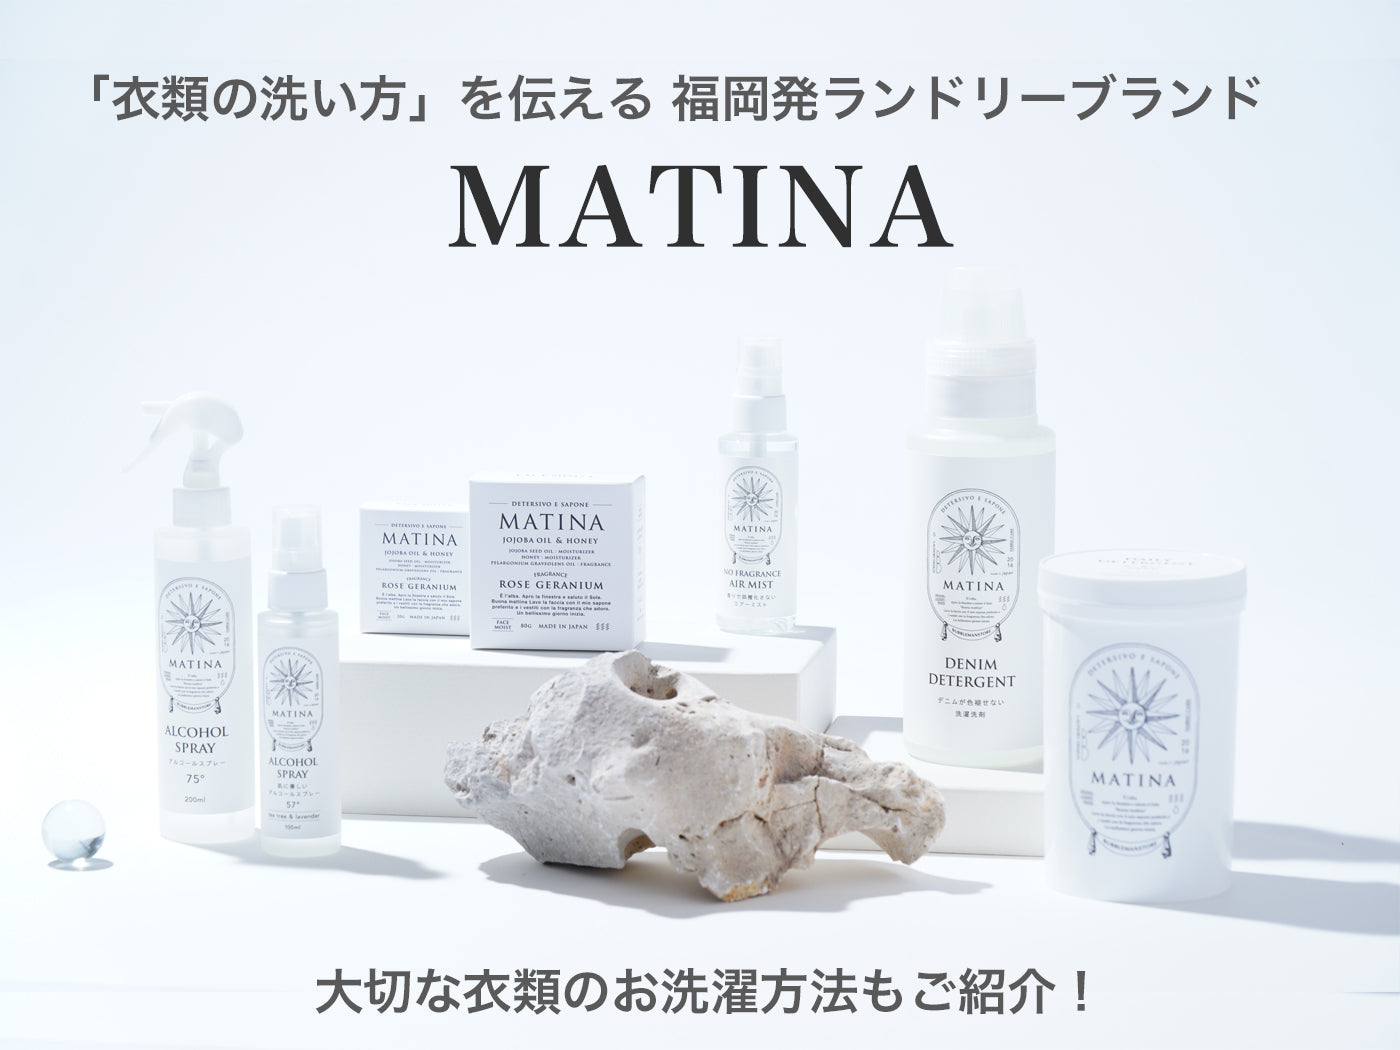 「衣類の洗い方」を伝える 福岡発ランドリーブランド「MATINA」